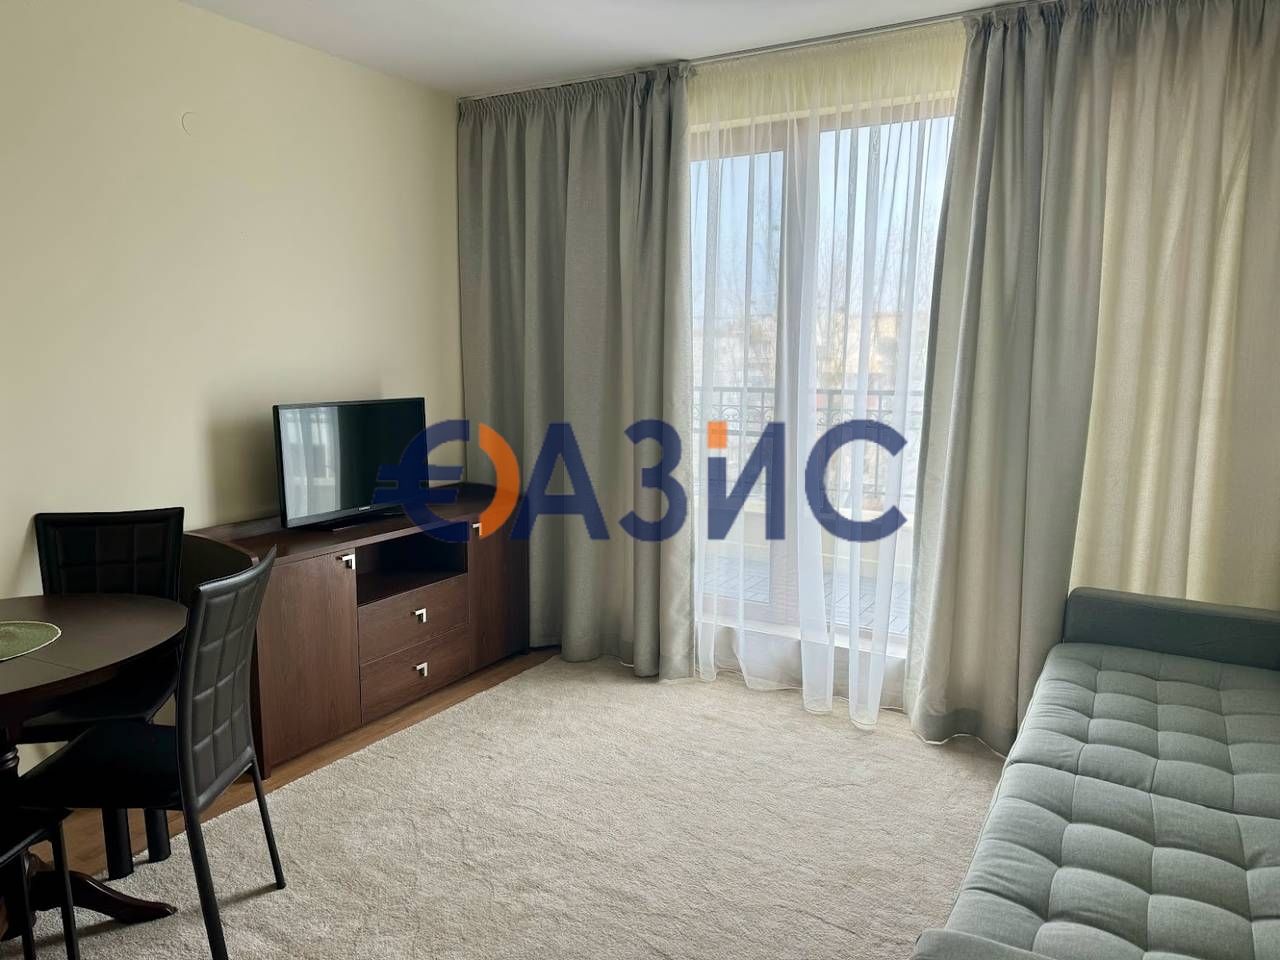 Apartment at Sunny Beach, Bulgaria, 80 sq.m - picture 1